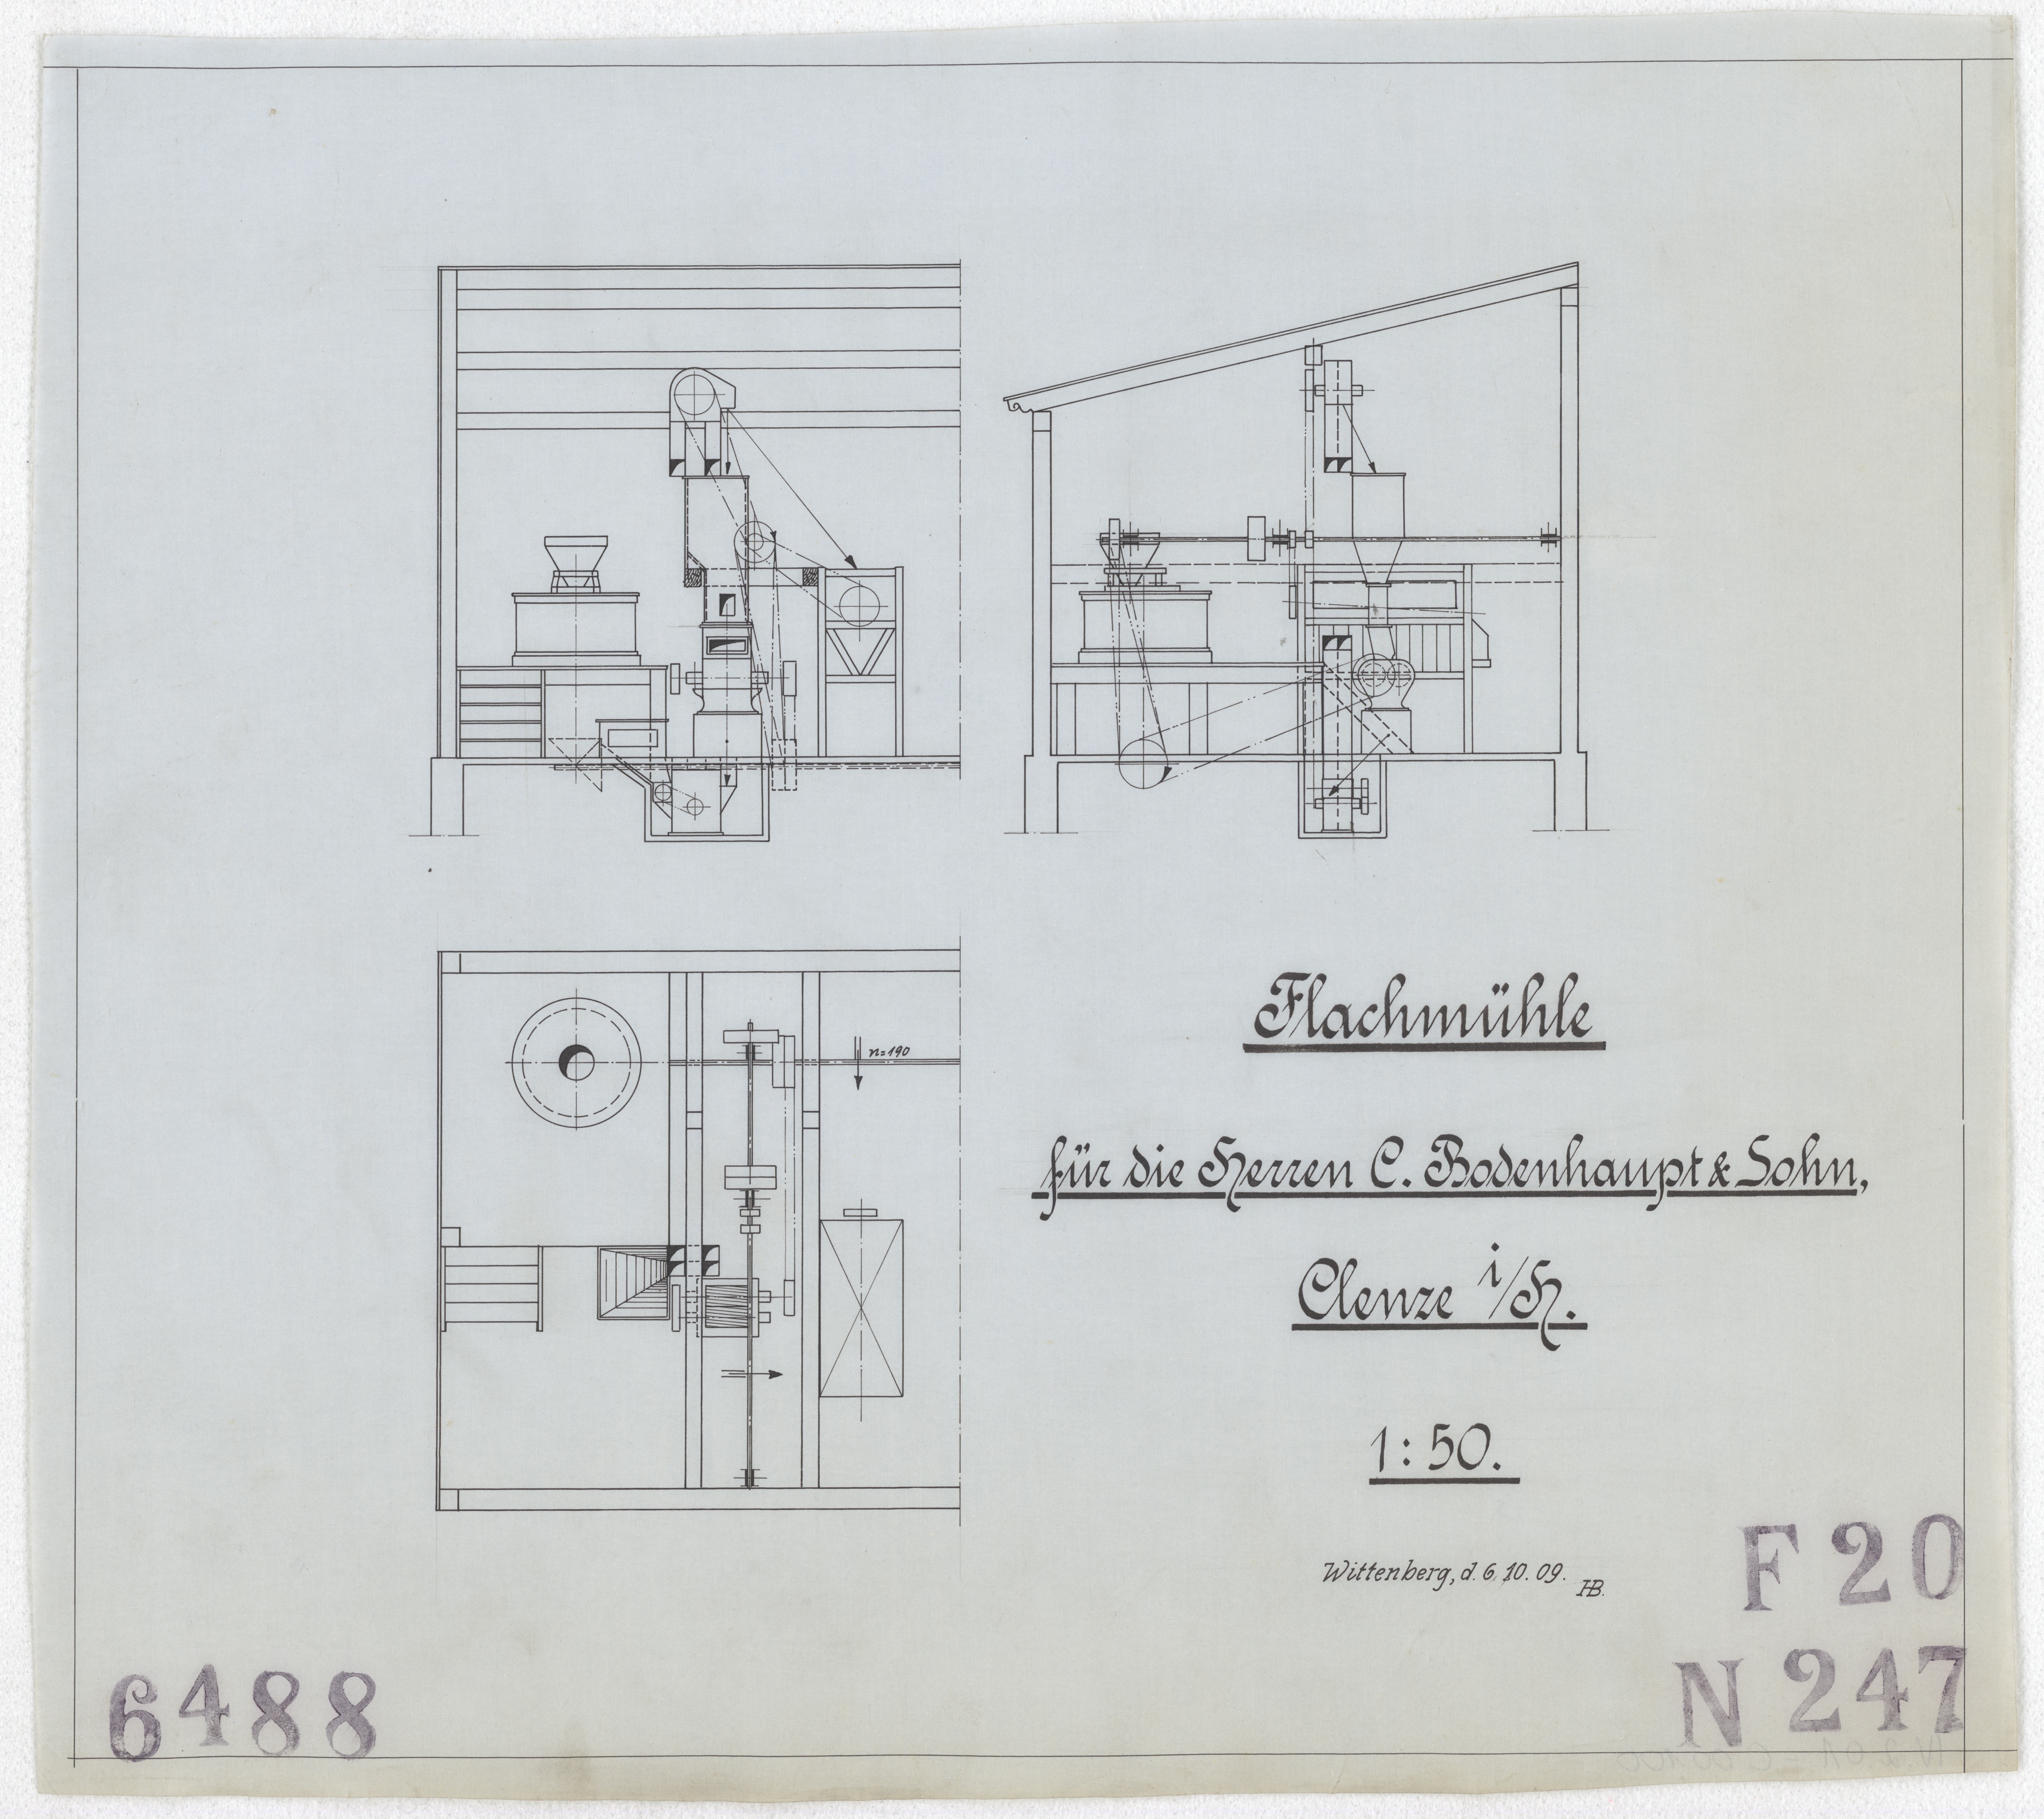 Technische Zeichnung : Flachmühle für die Herren C. Bodenhaupt & Sohn, Clenze in [der Provinz] Hannover (Stiftung Deutsches Technikmuseum Berlin CC BY-SA)